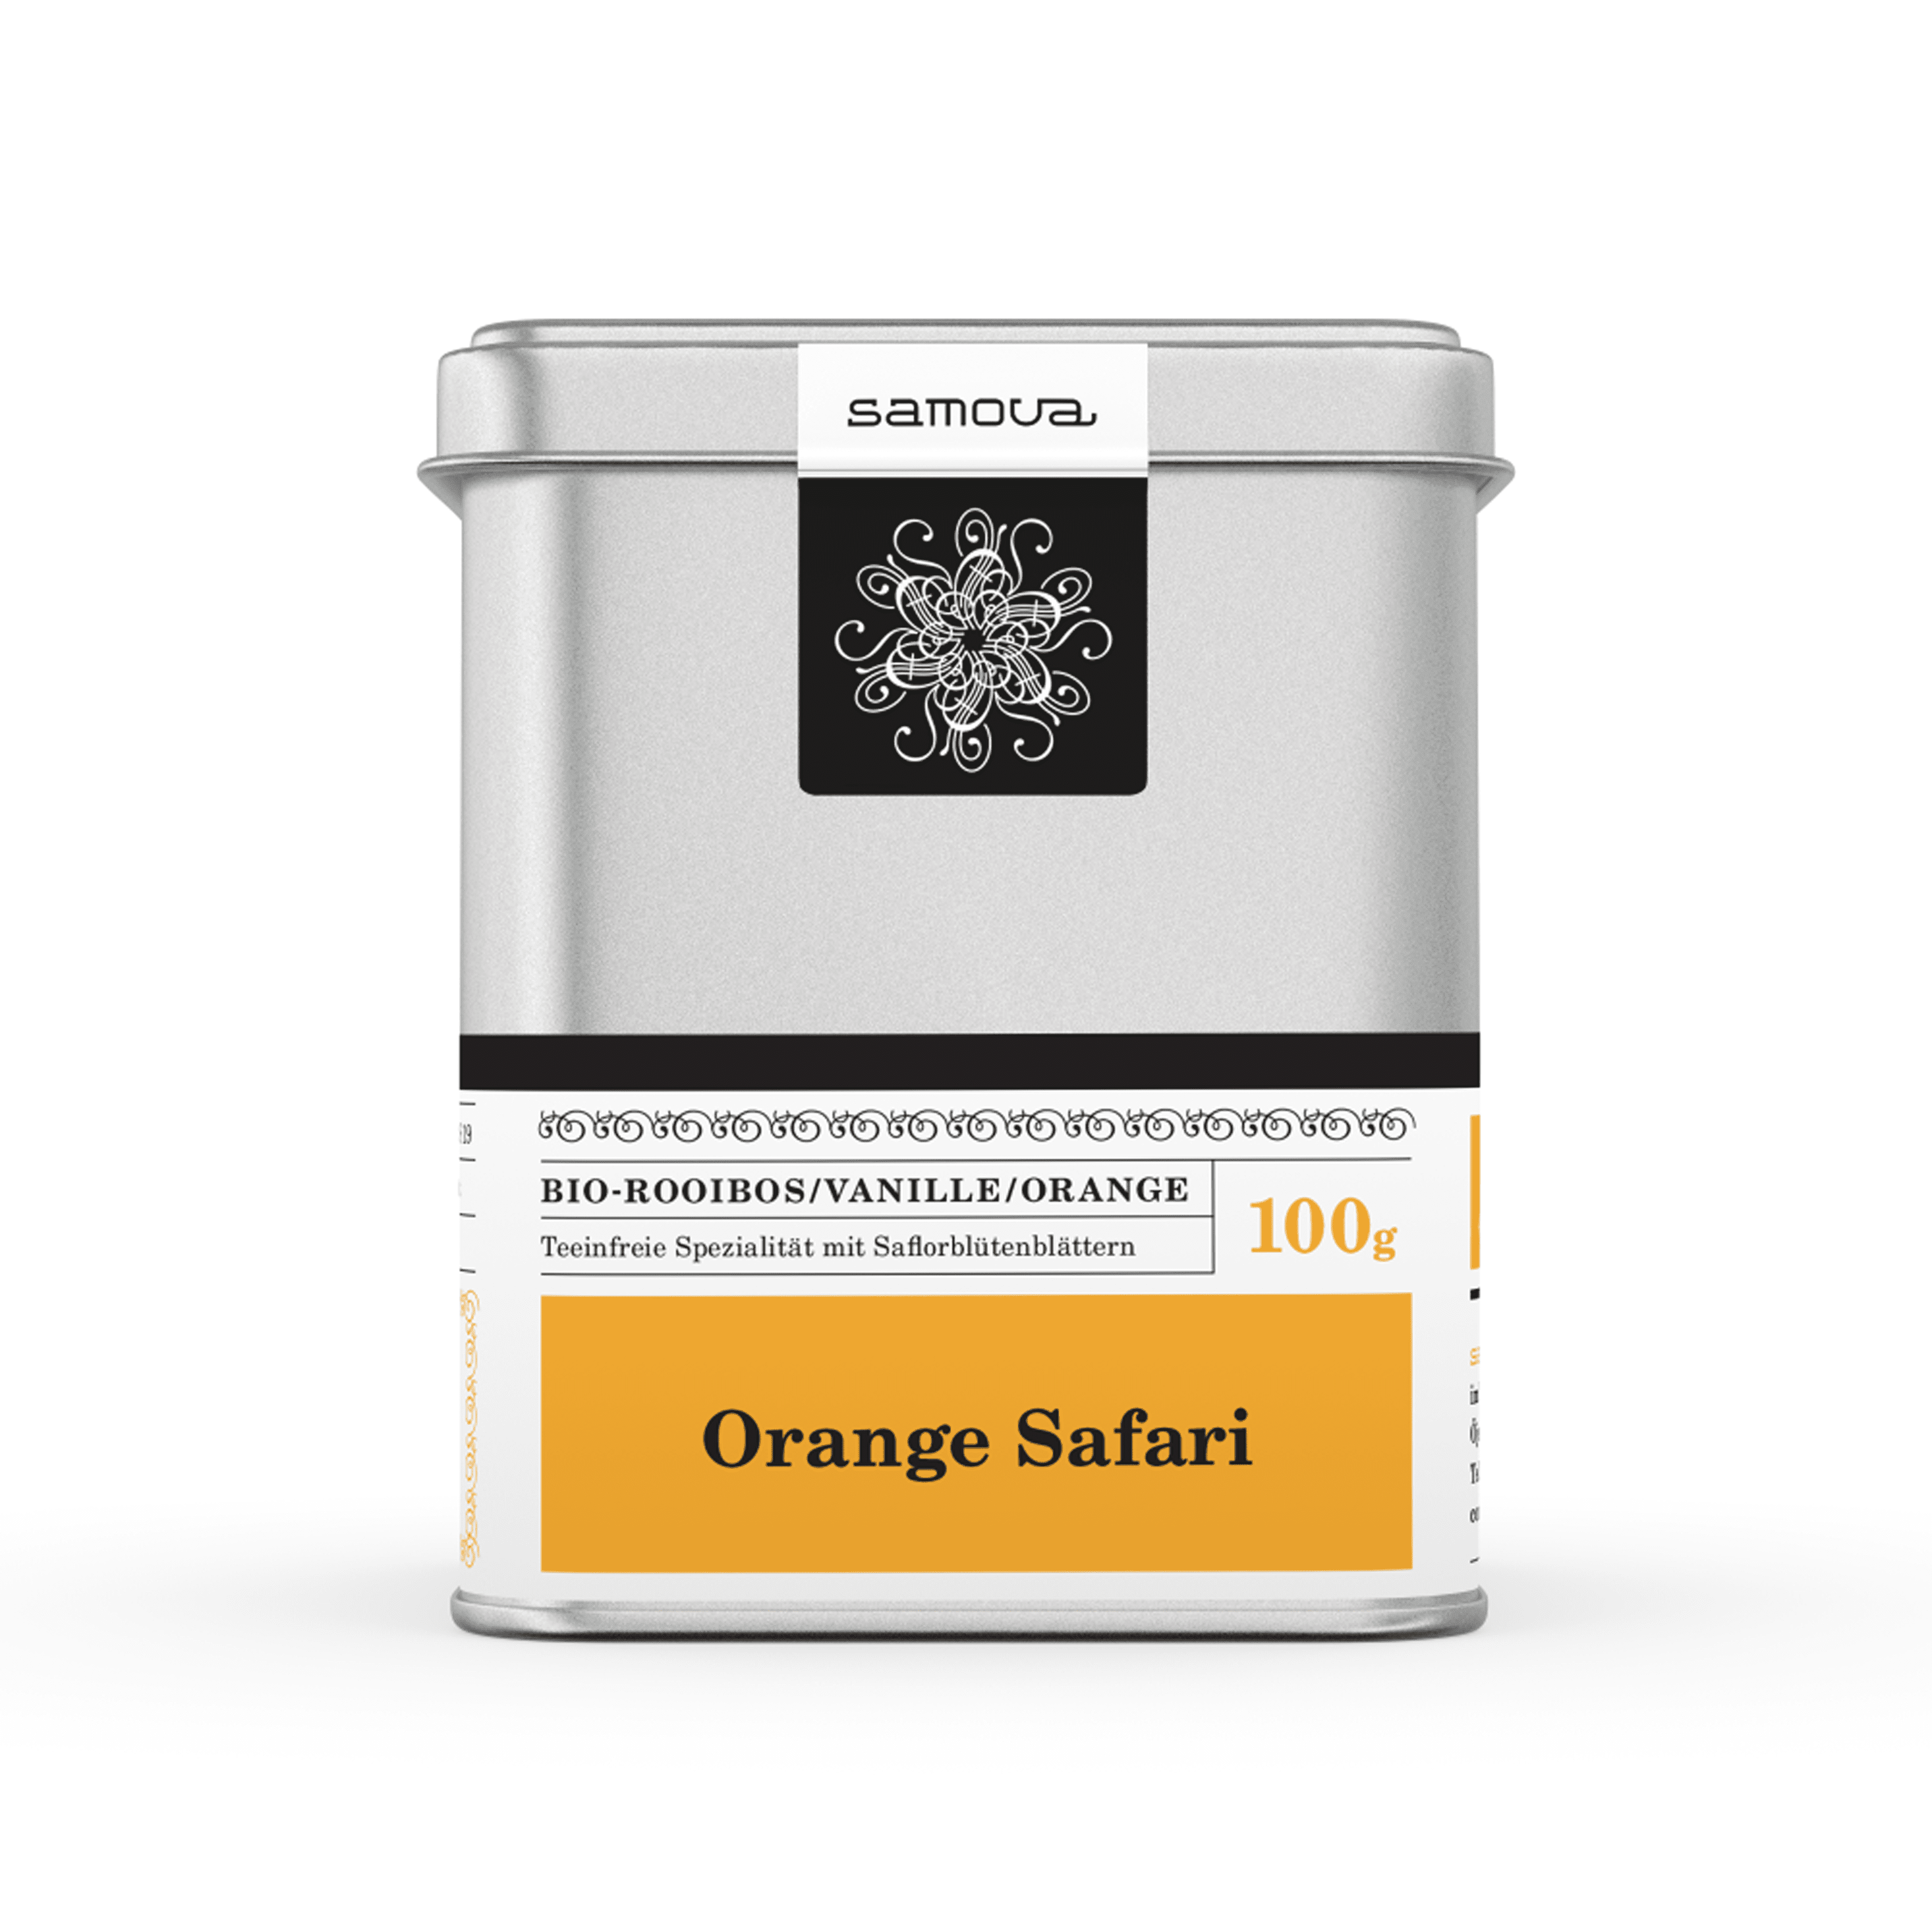 Can of Orange Safari tea